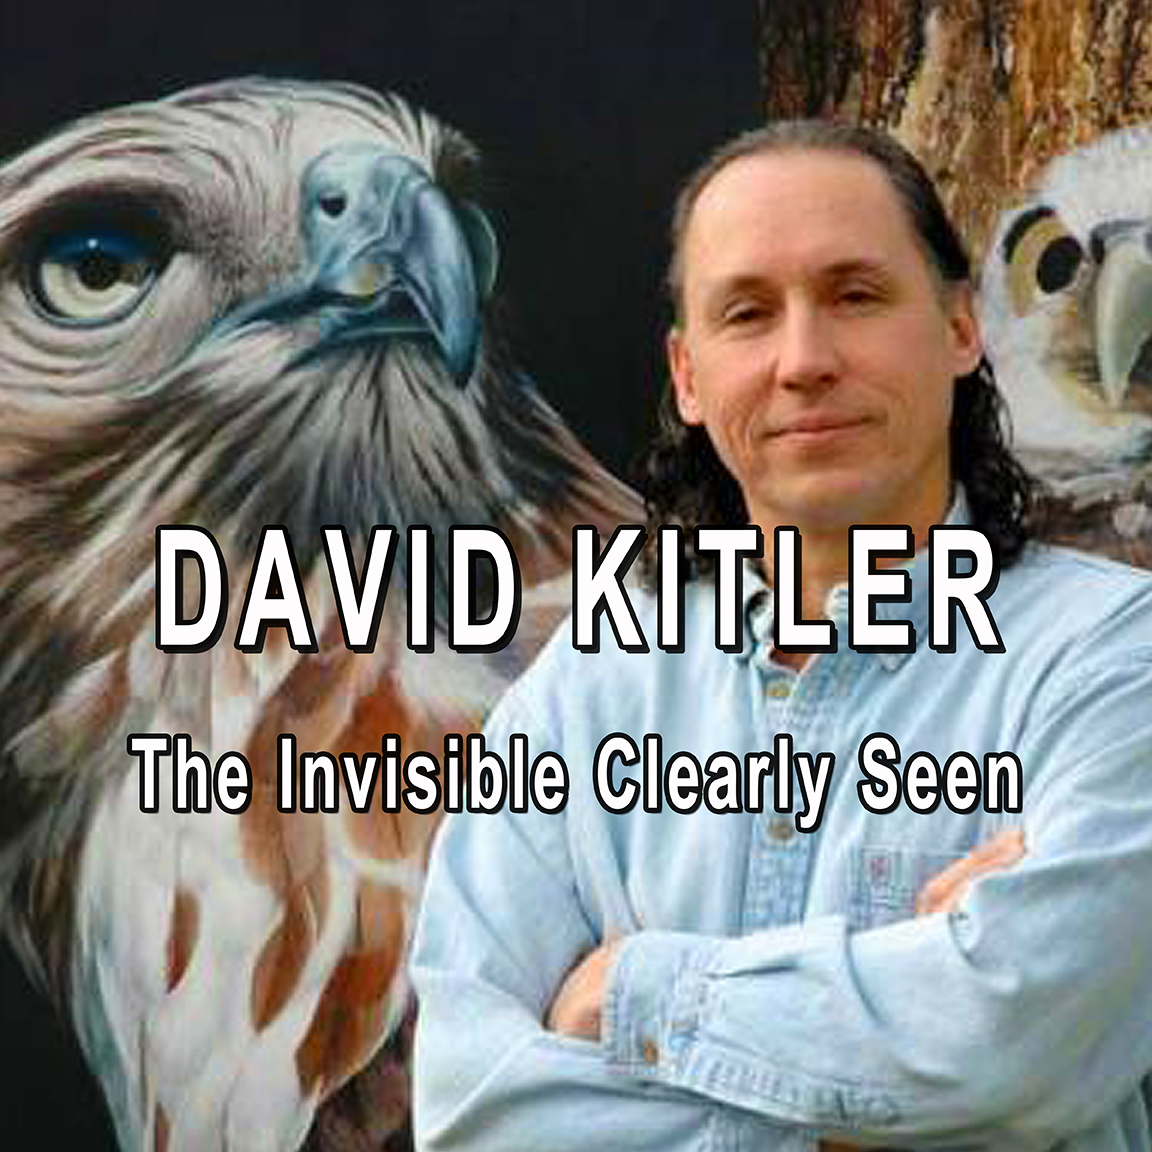 David Kitler